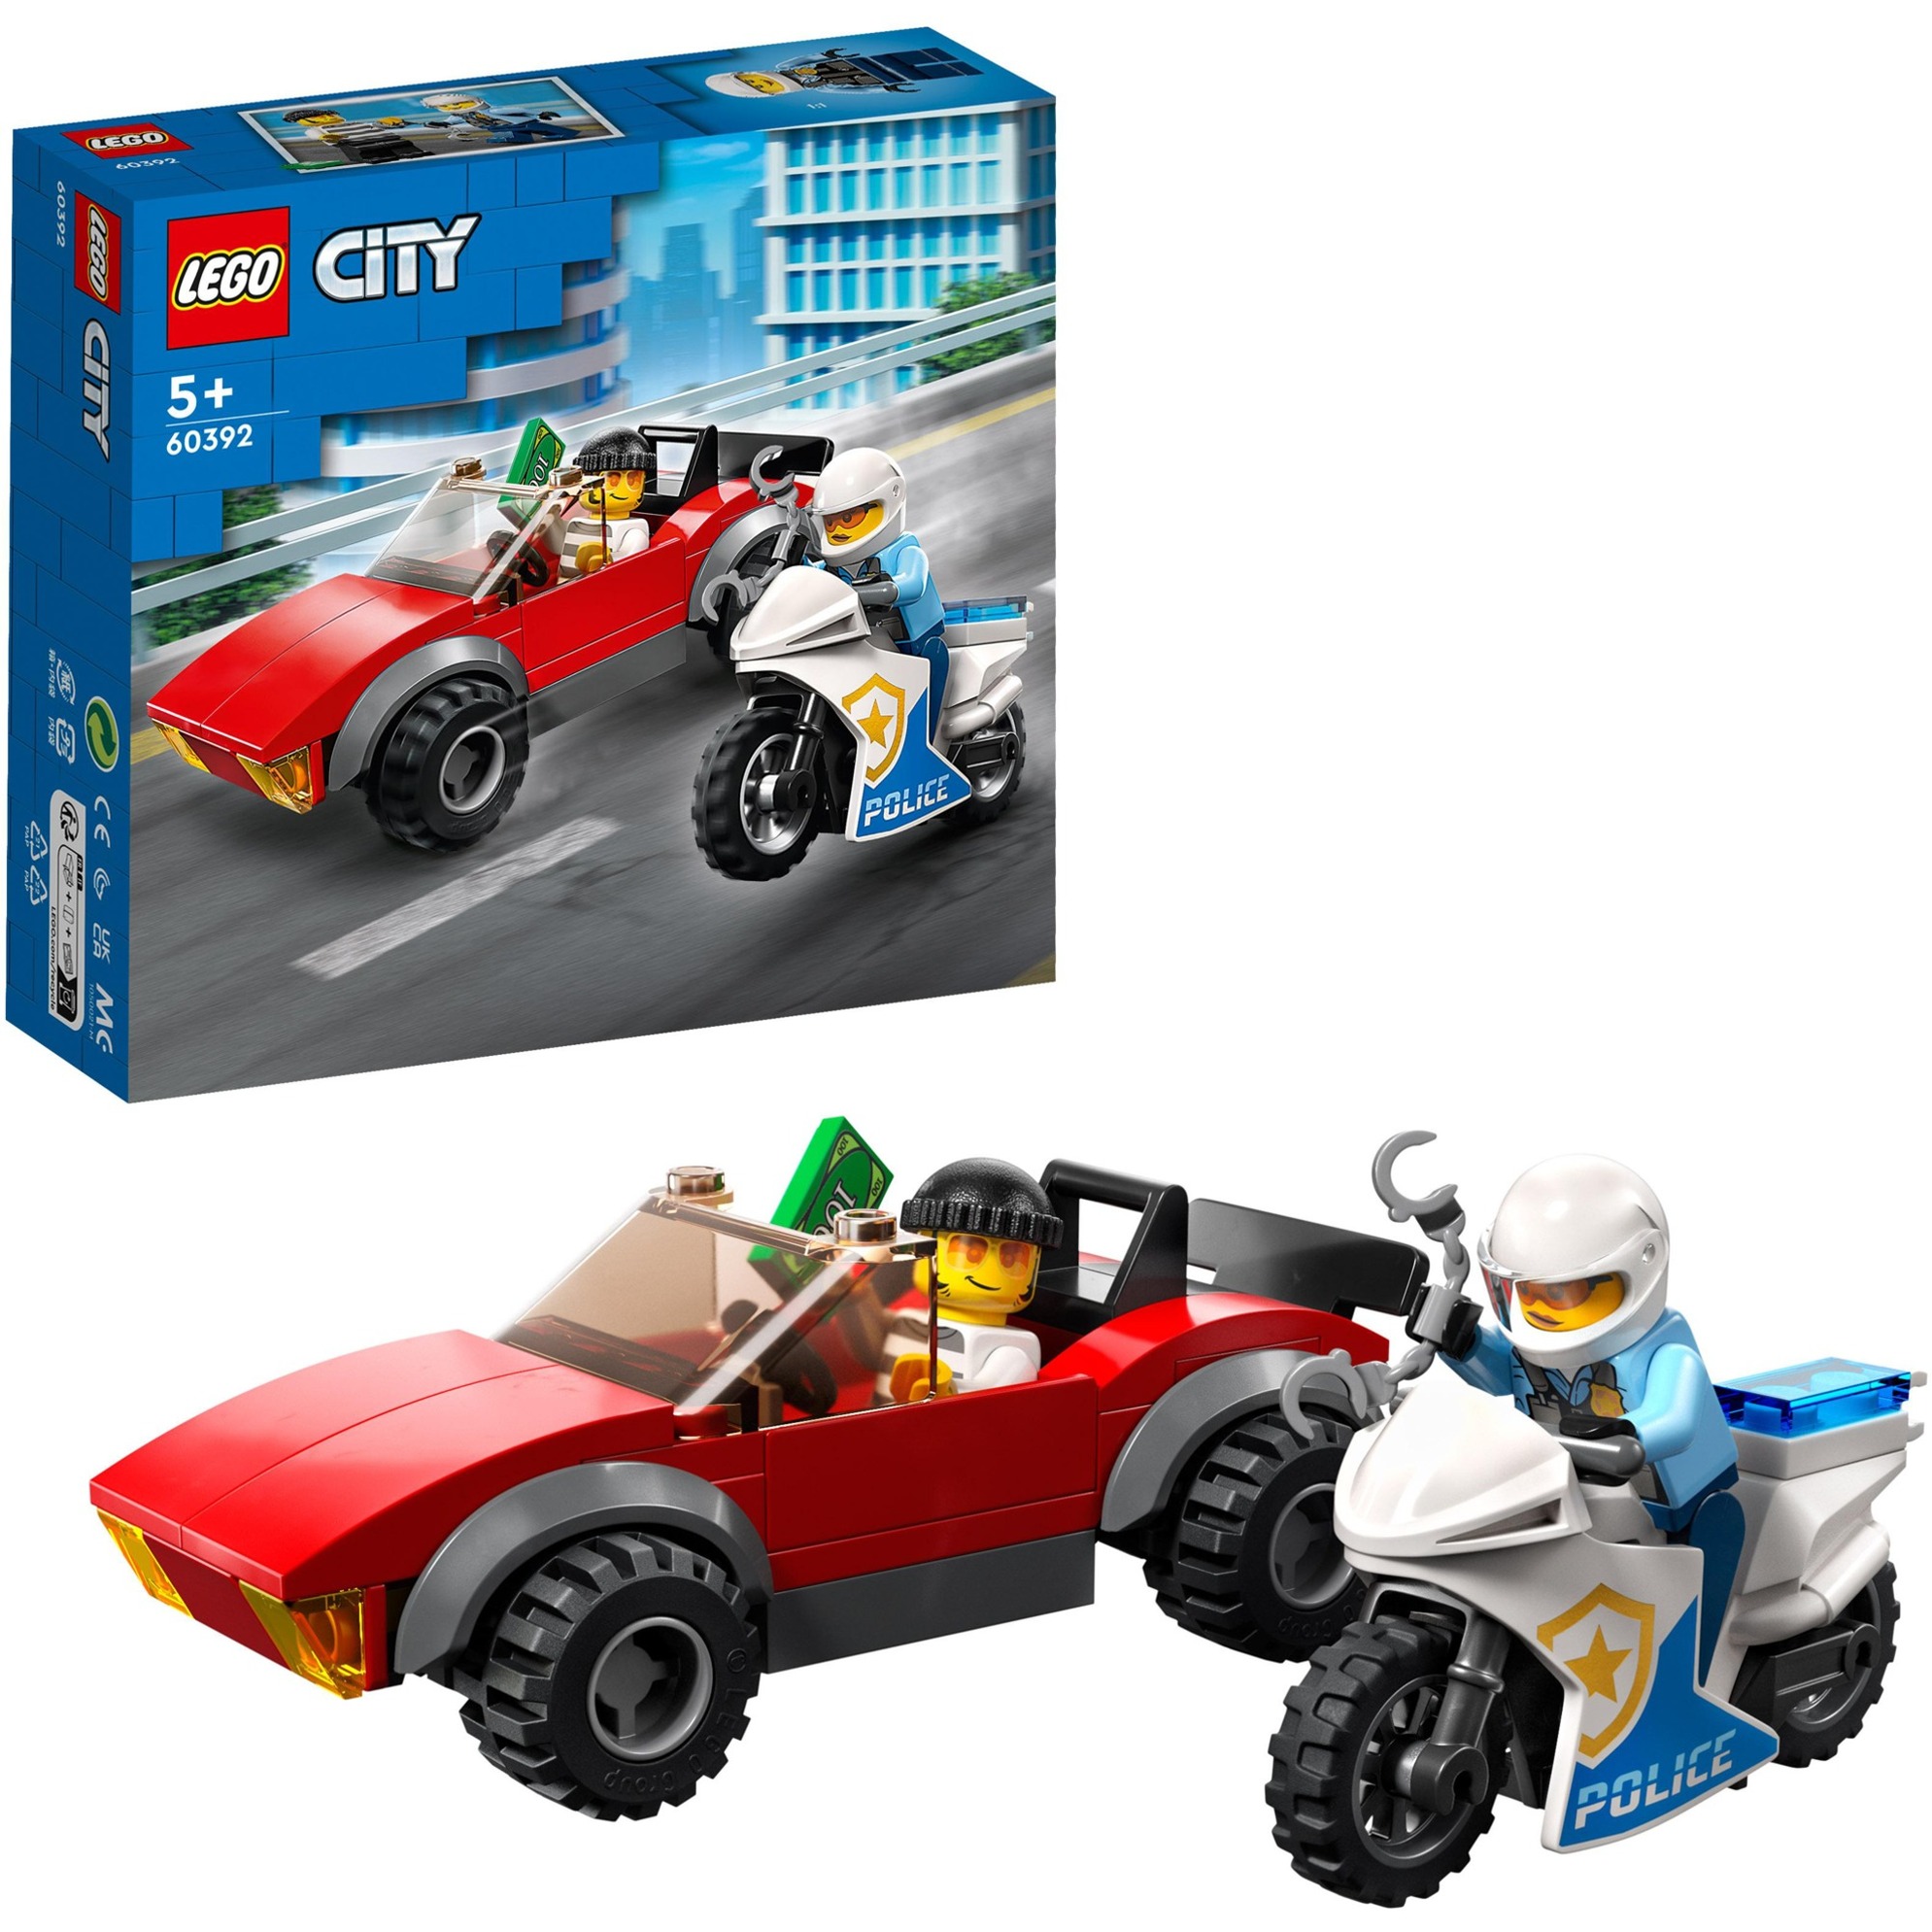 60392 City Verfolgungsjagd mit dem Polizeimotorrad, Konstruktionsspielzeug